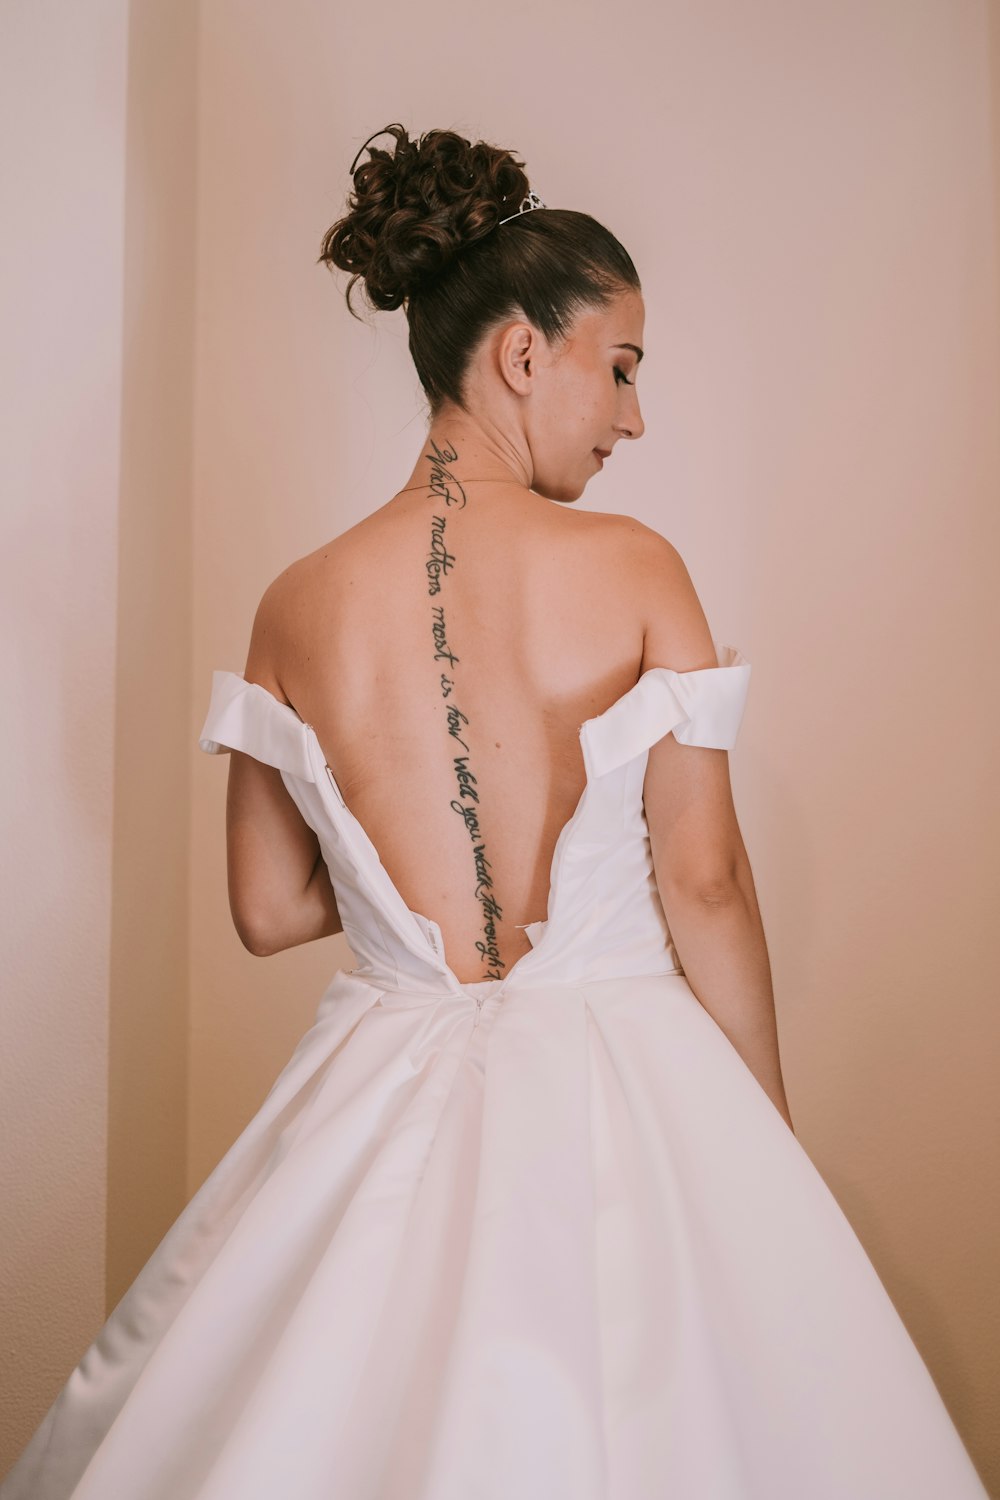 Foto Una mujer con un vestido blanco con un tatuaje en la espalda – Imagen  Ropa gratis en Unsplash